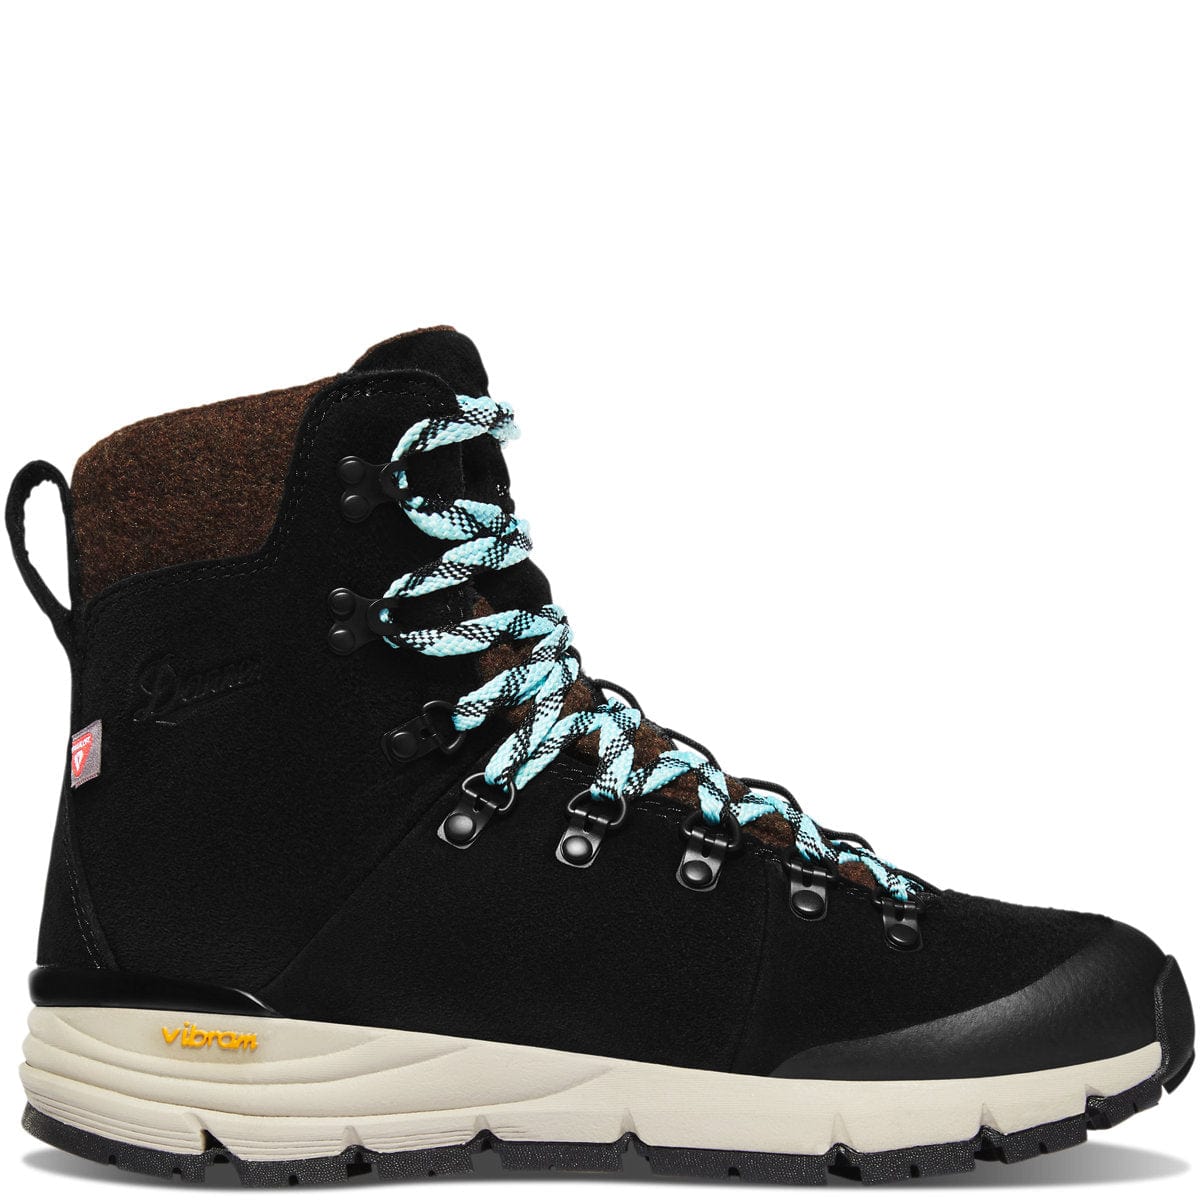 Danner Danner Womens Arctic 600 Side-Zip 7" 200G Hiking Boot Black/Spark Blue / 5 / M Footwear